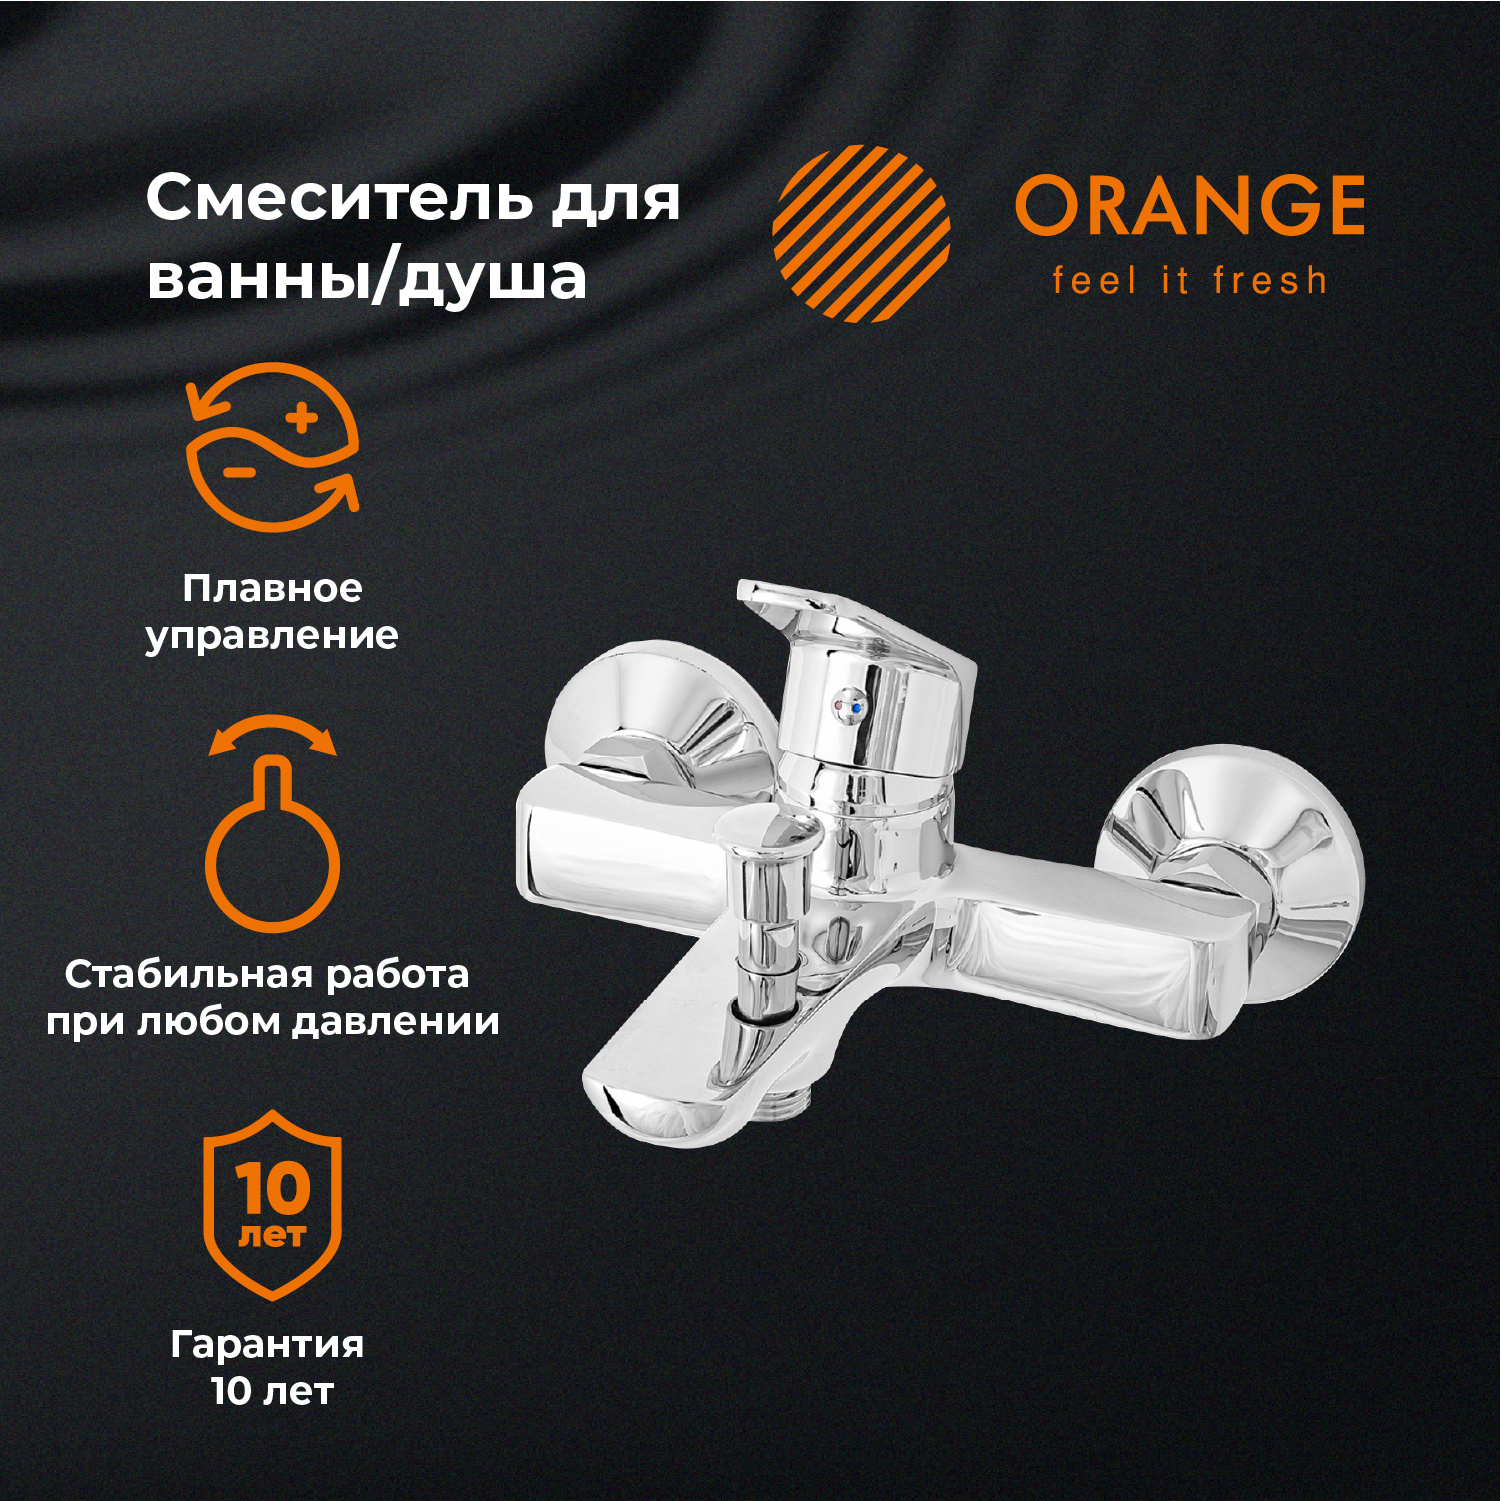 Смеситель для ванны и душа Orange FELIX M14-100cr цвет хром